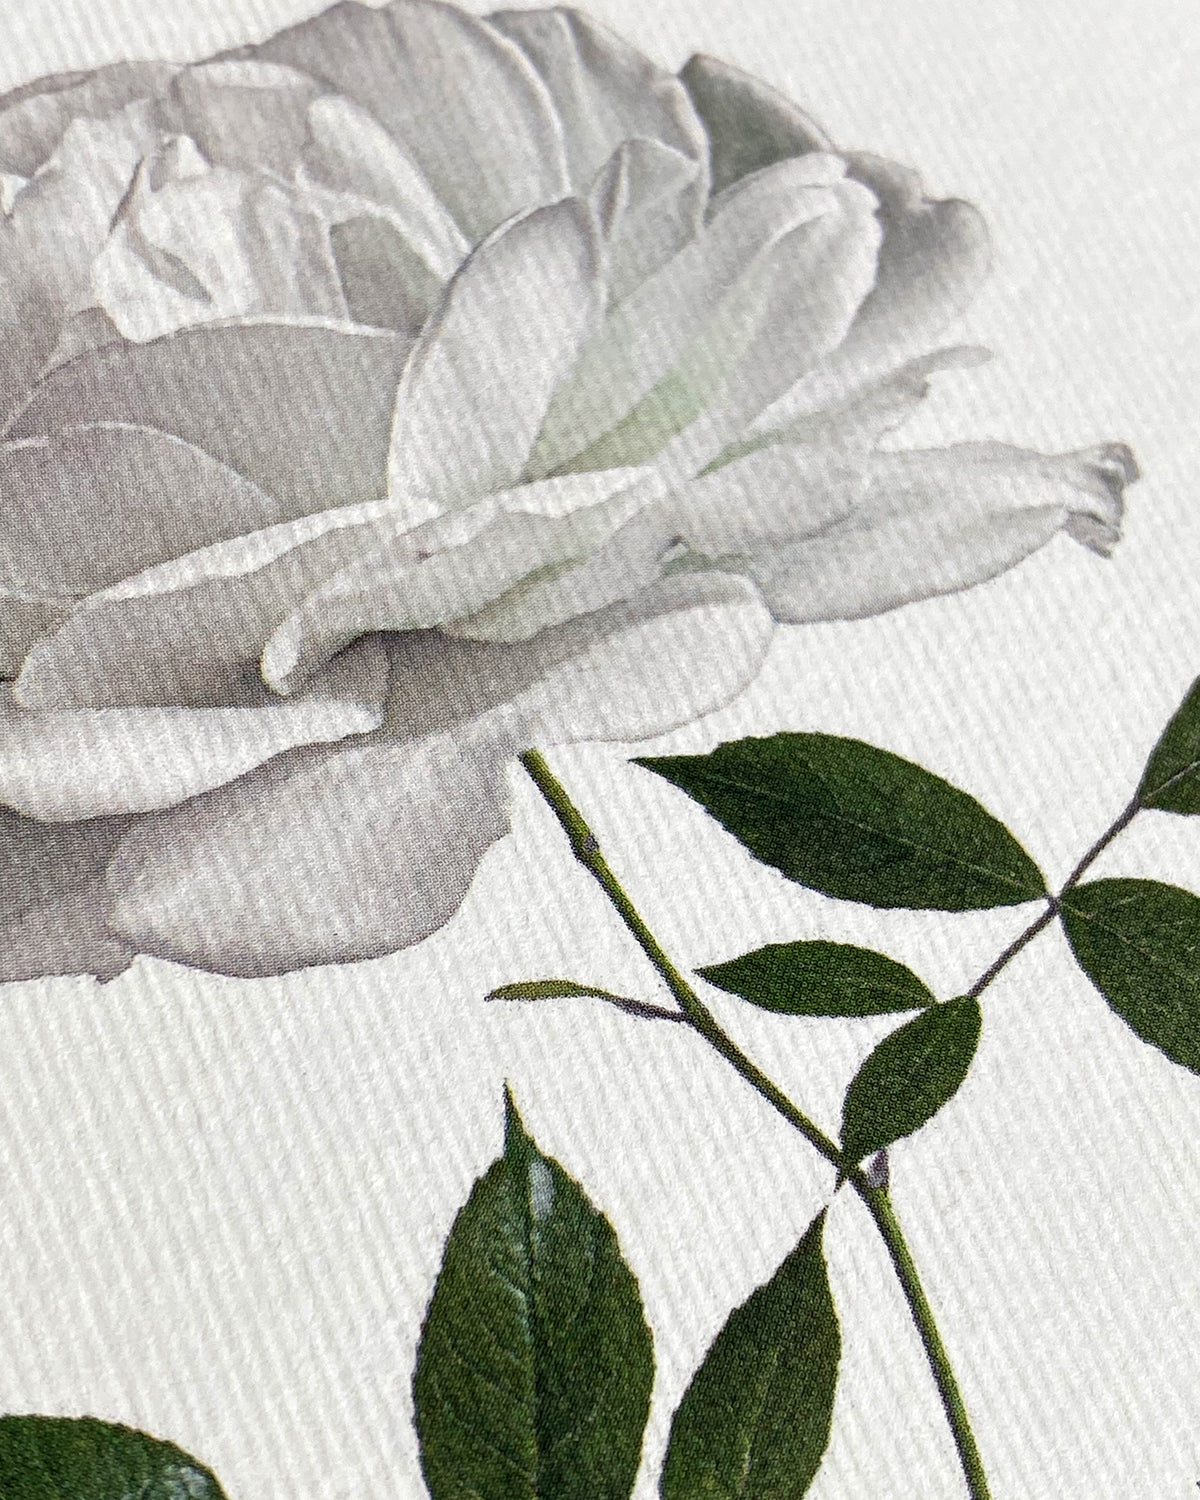 White Rose Notecard